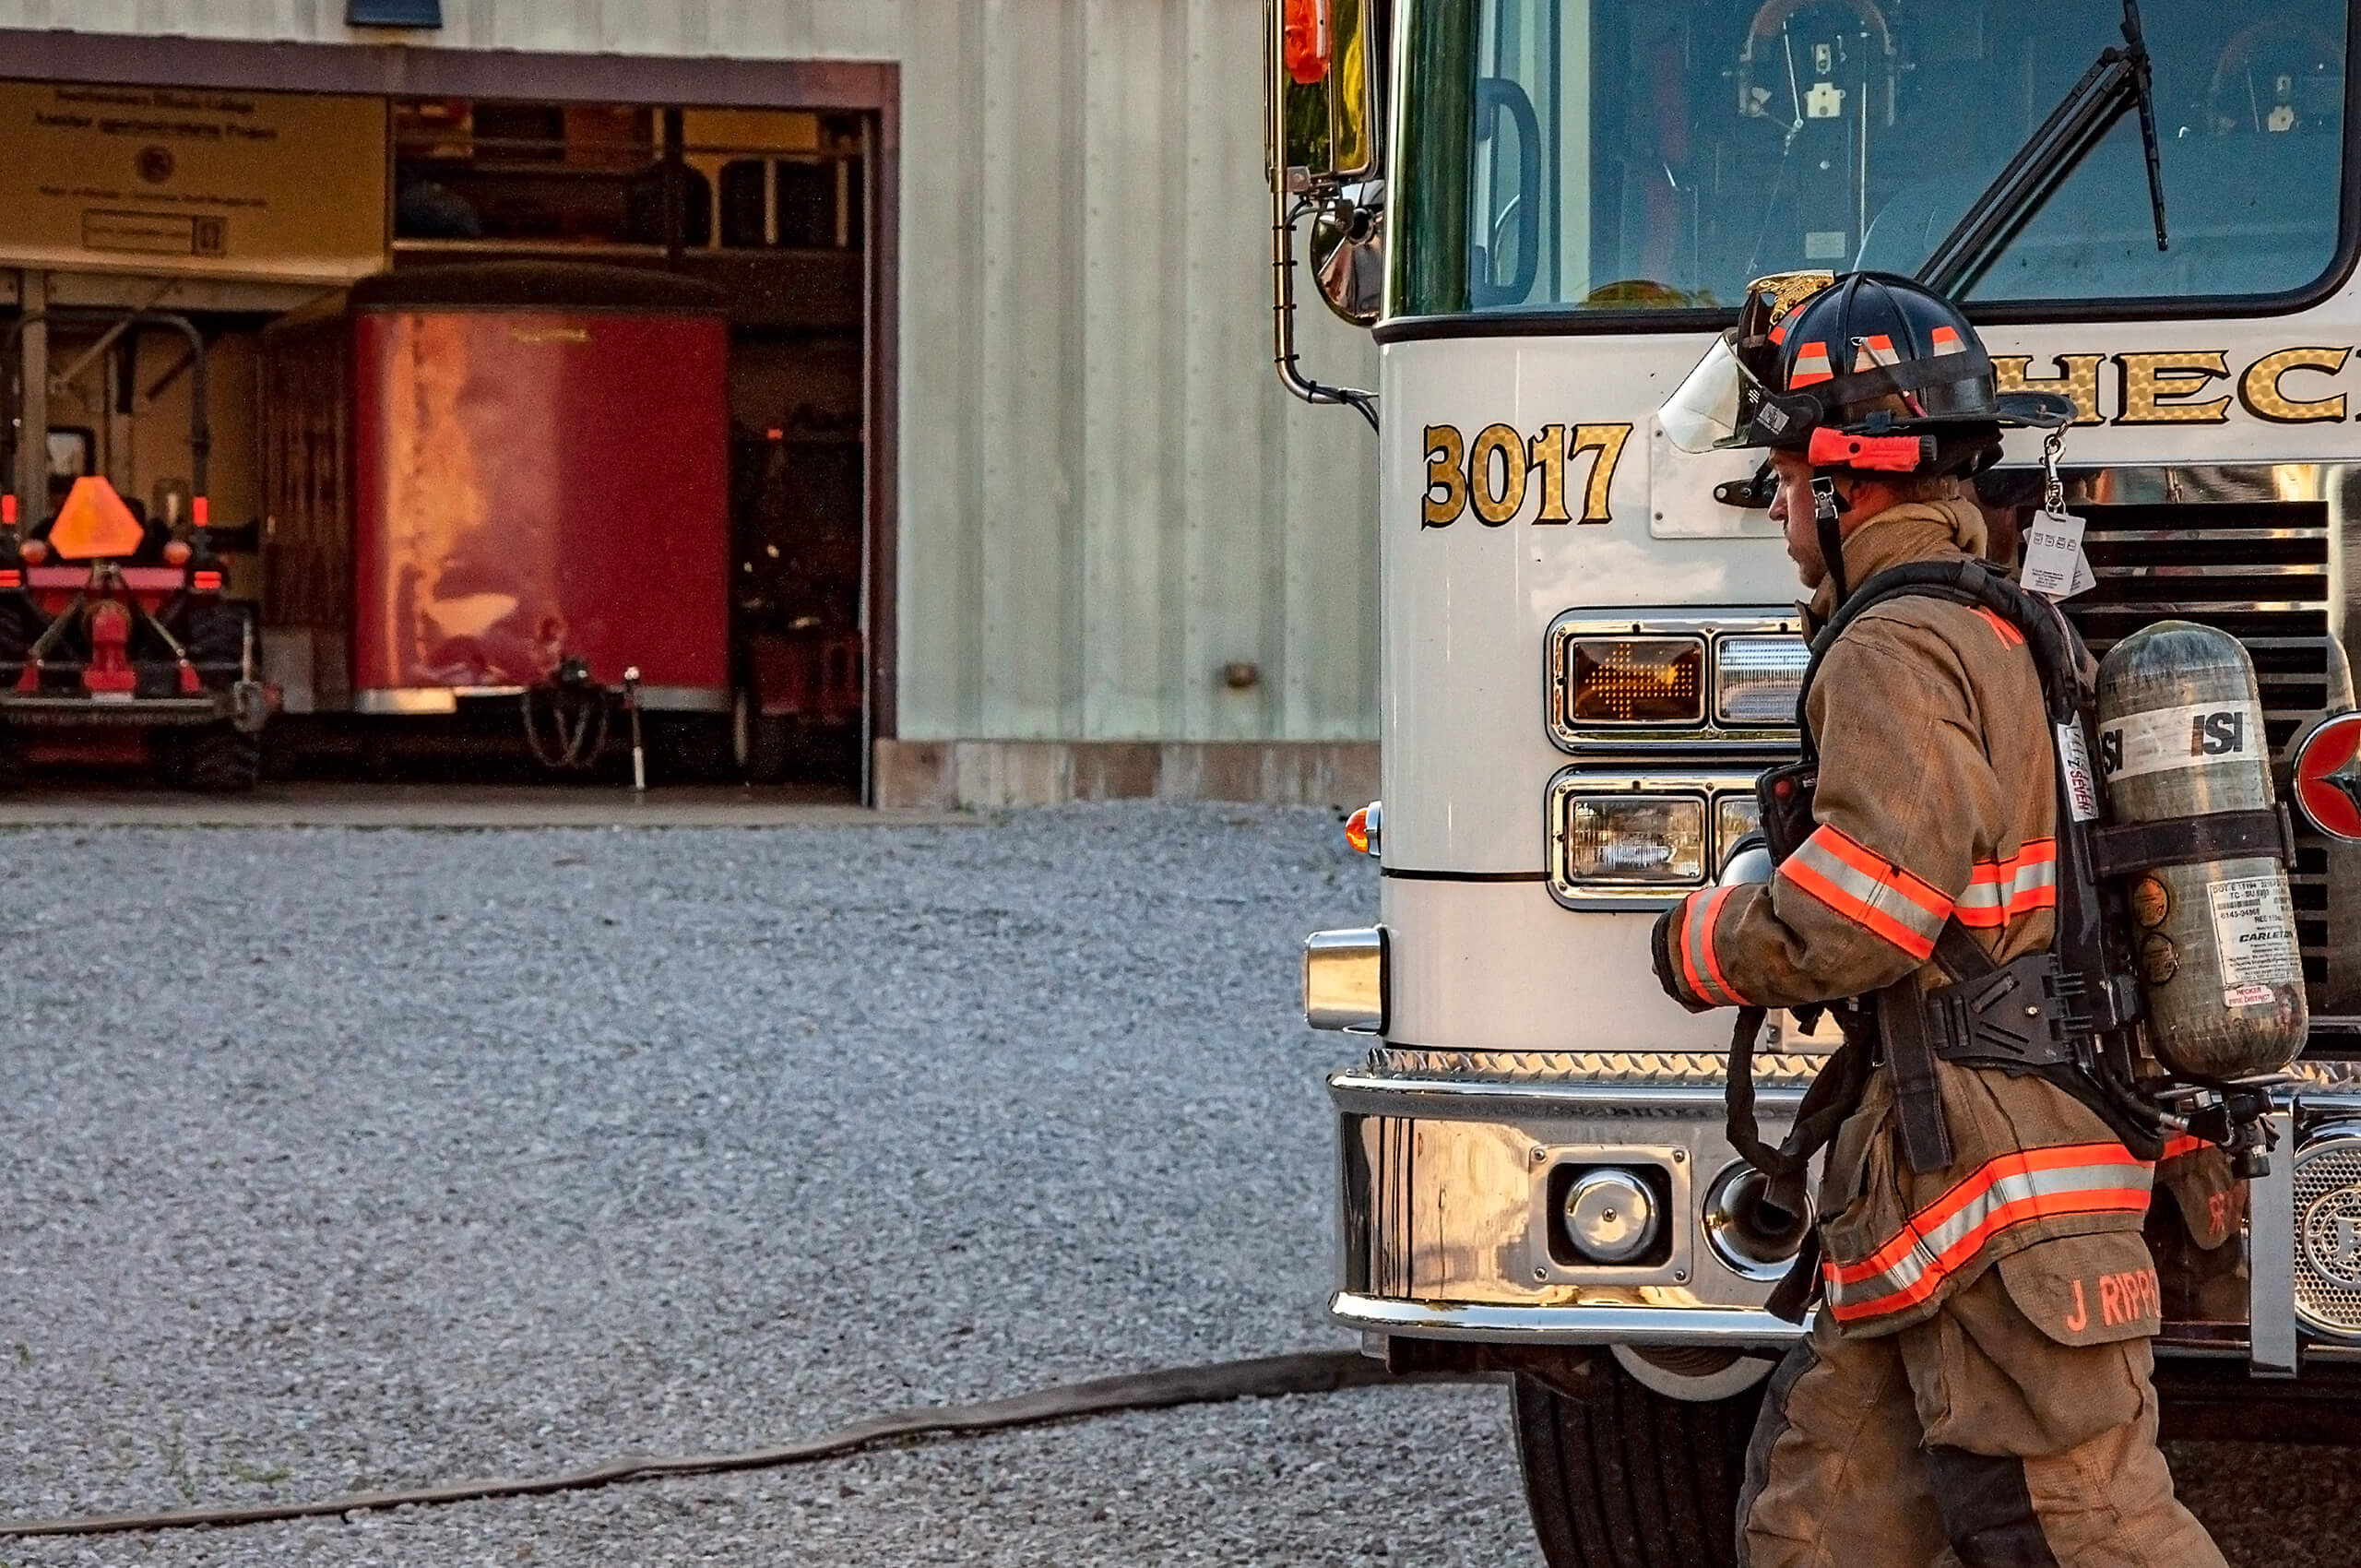 Hecker Fire Science training man in fire gear in front of a fire truck